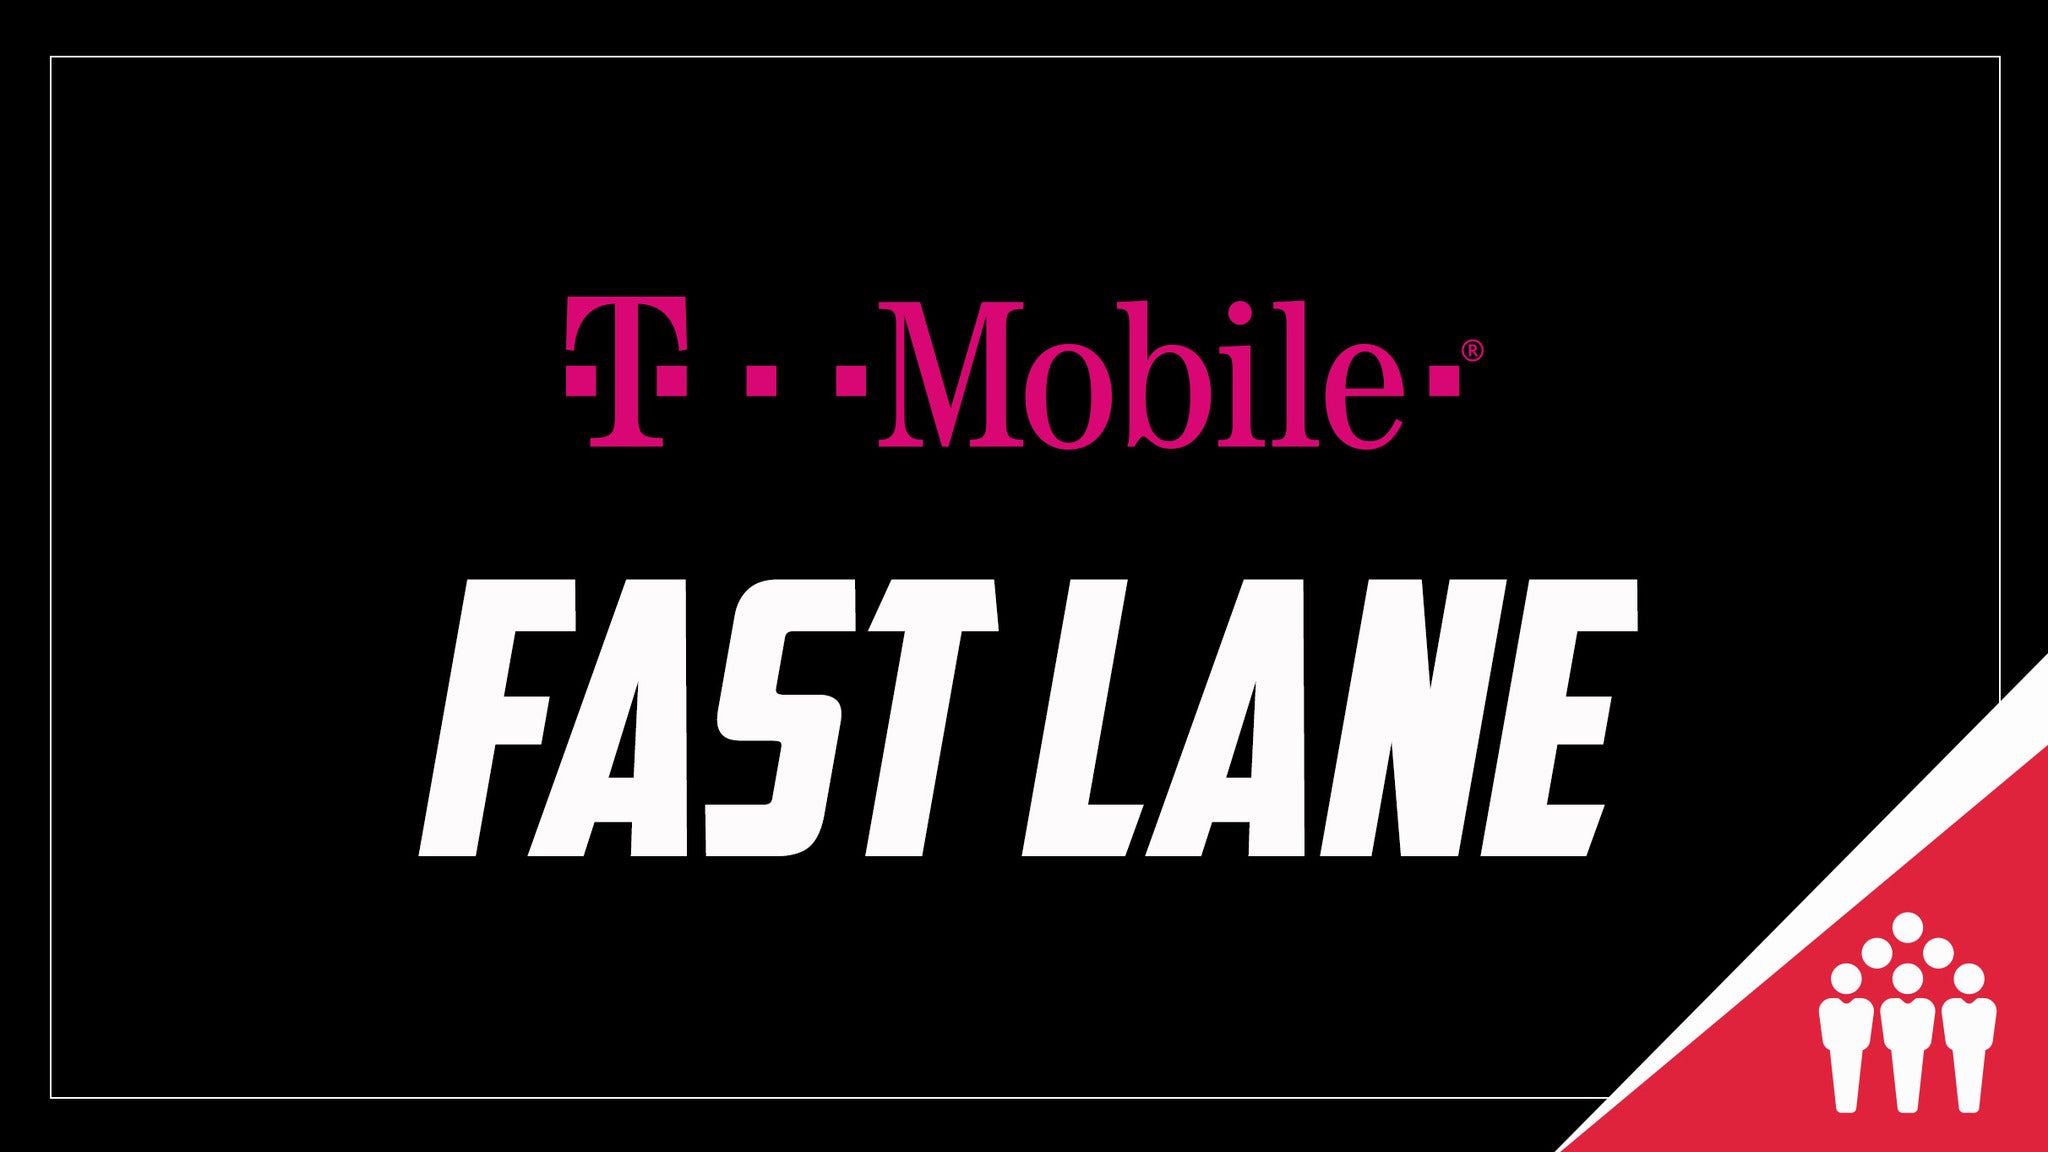 Live Nation T-Mobile Fast Lane presale information on freepresalepasswords.com